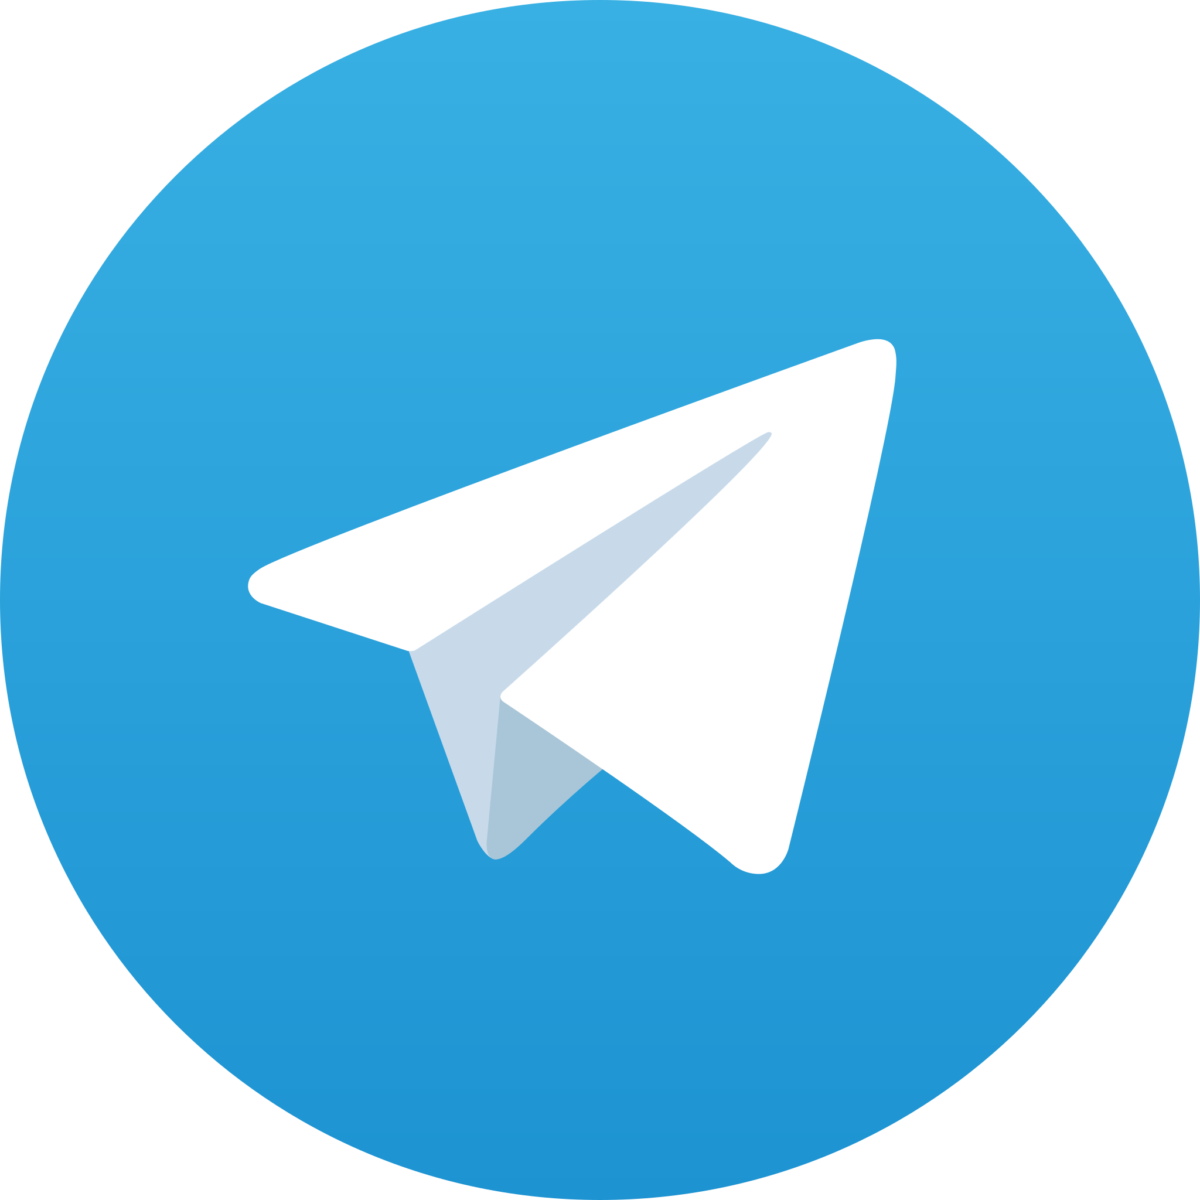 Telegram официально запустил платную подписку